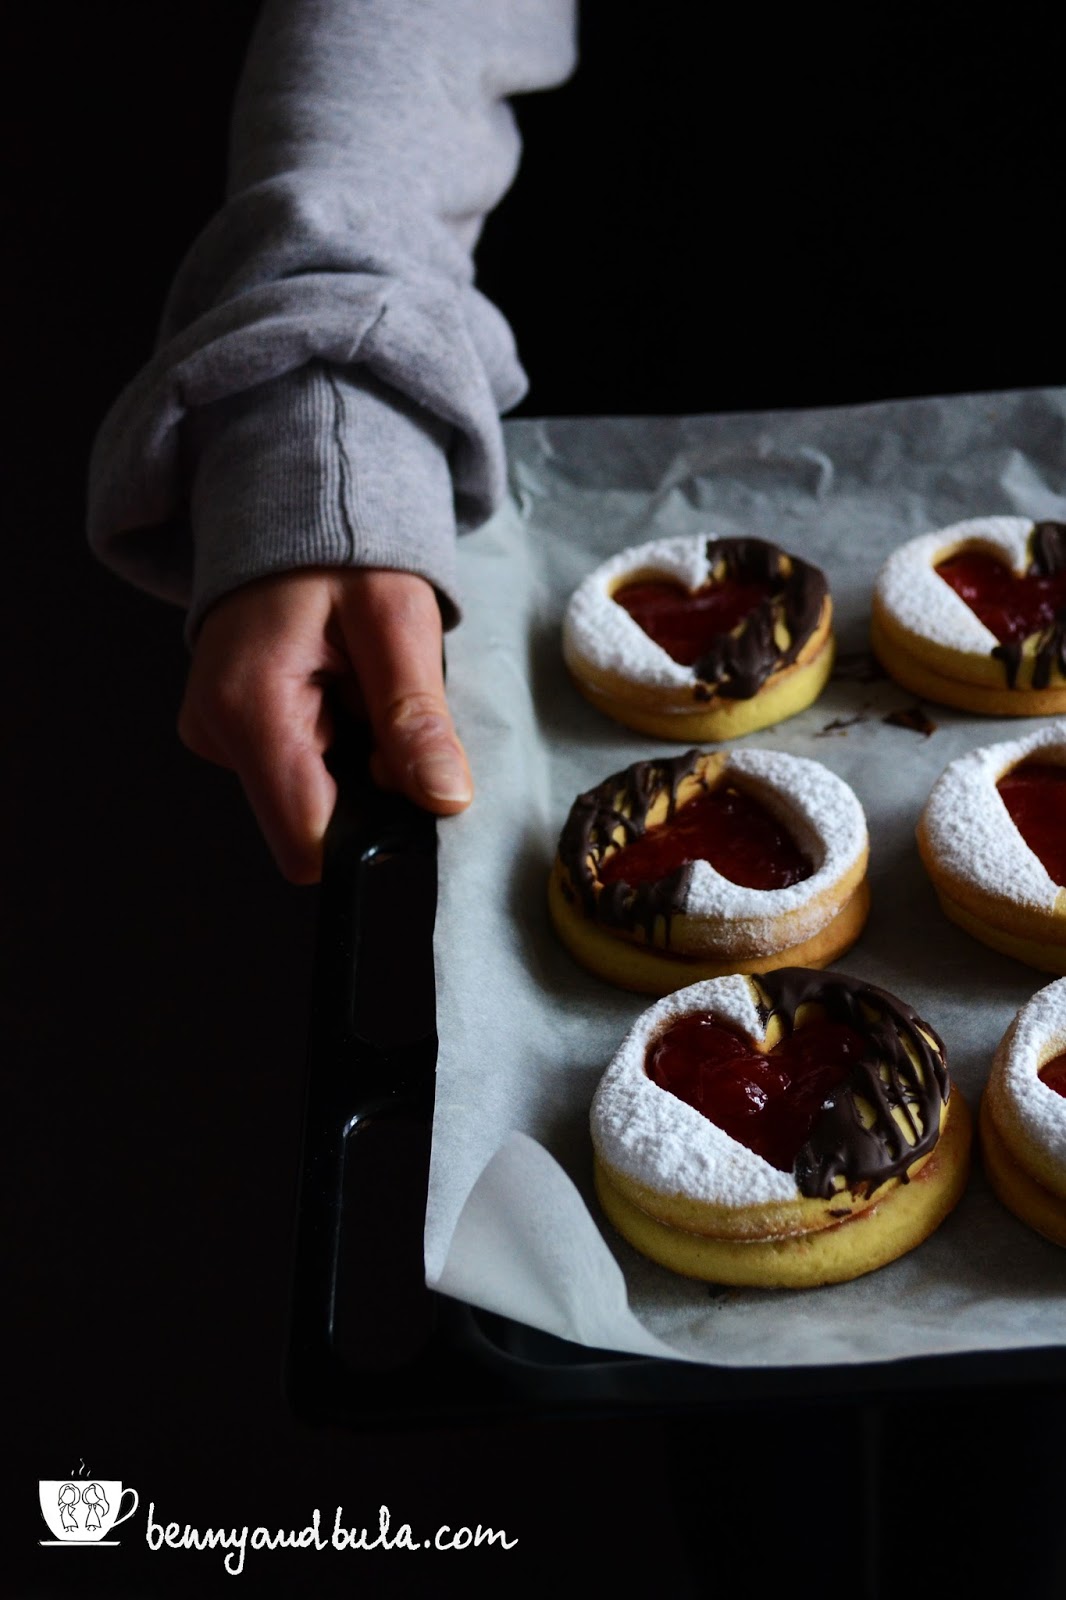 ricetta biscotti occhio di bue san valentino/st. valentine's linzer cookies recipe